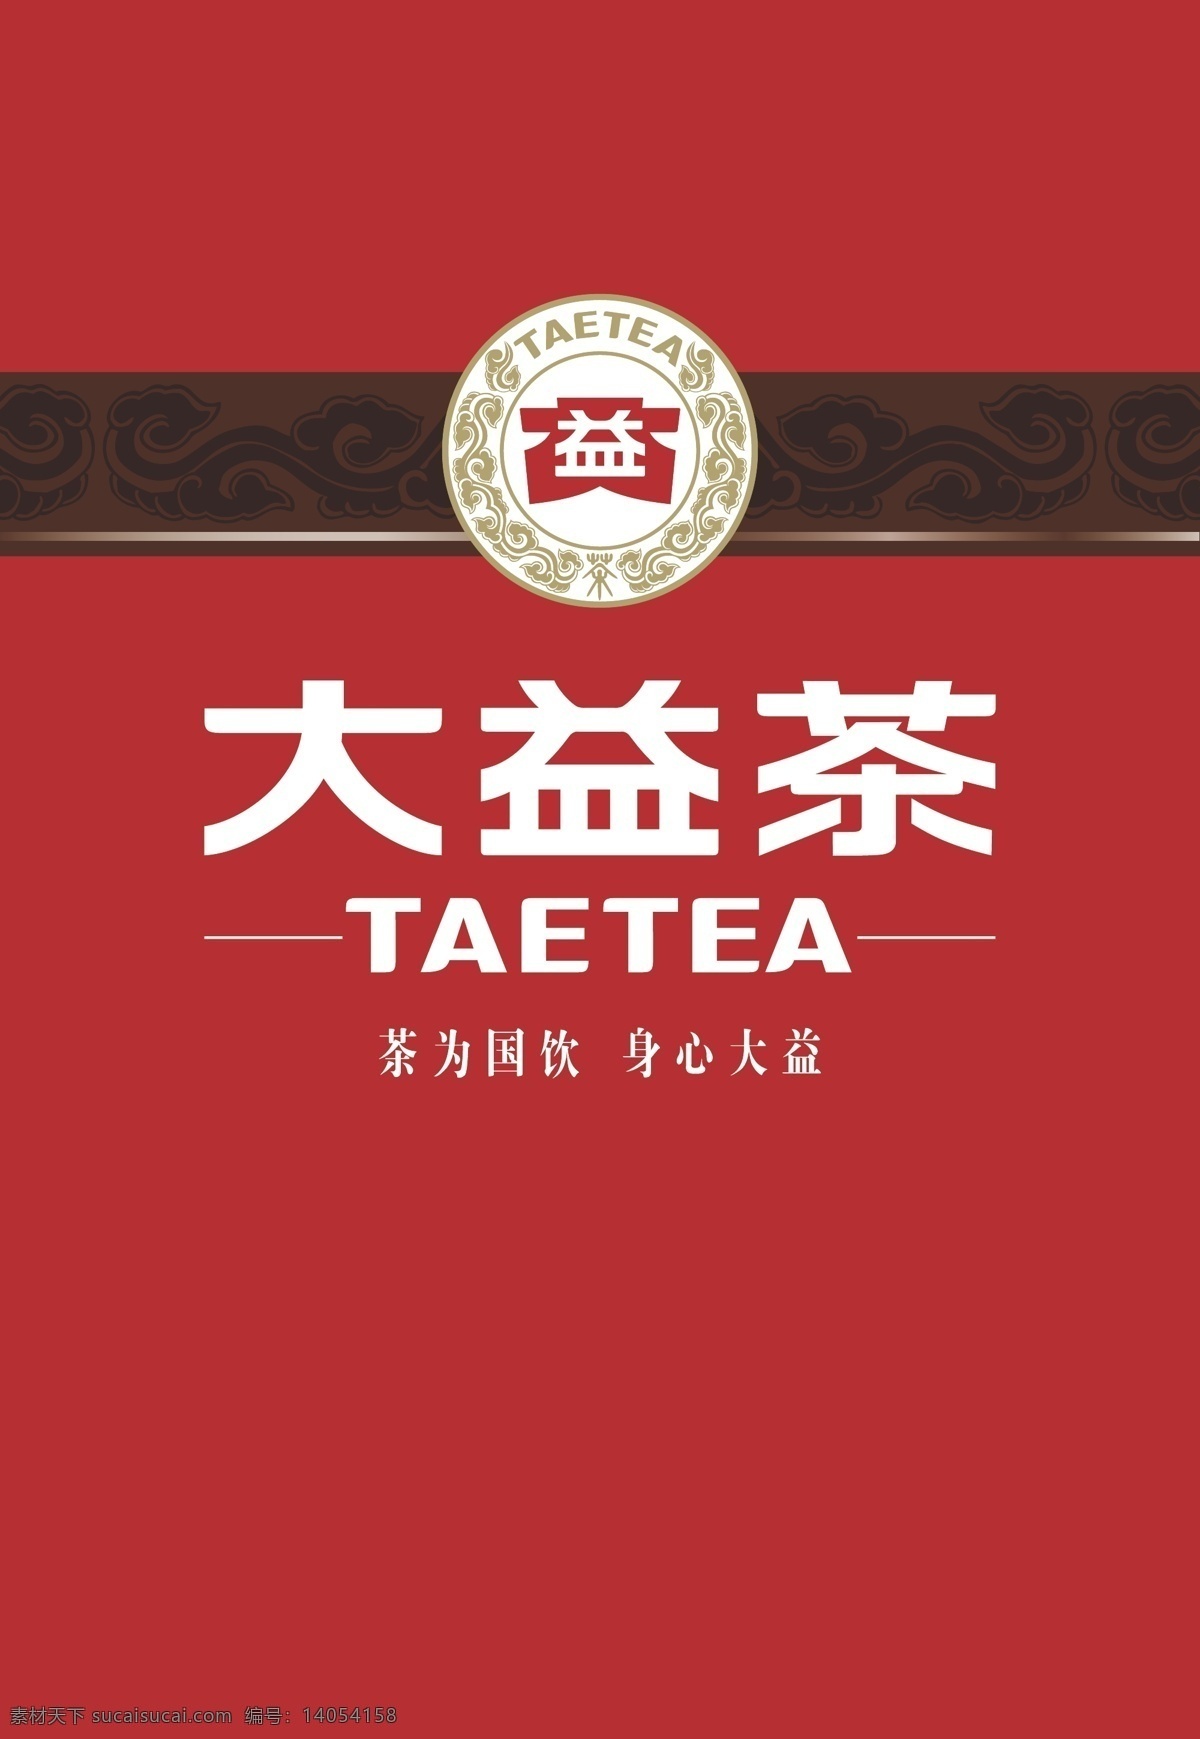 大益茶背景墙 背景墙 大益茶vi 大益茶设计 大 益 茶 logo 标志图标 企业 标志